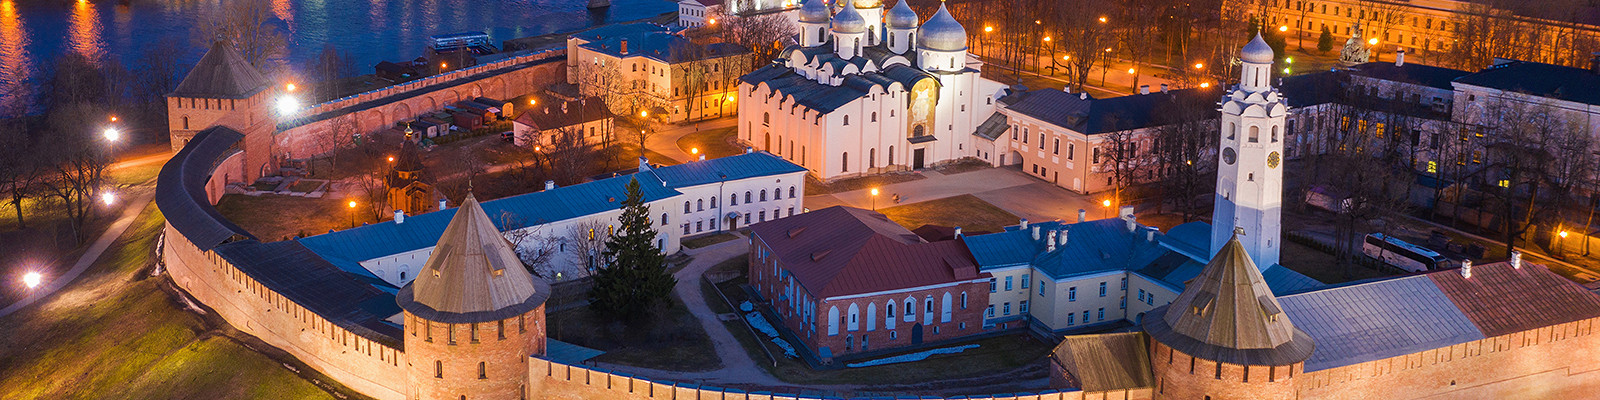 Путеводитель по Великому Новгороду — как добраться, где остановиться и чтопосмотреть